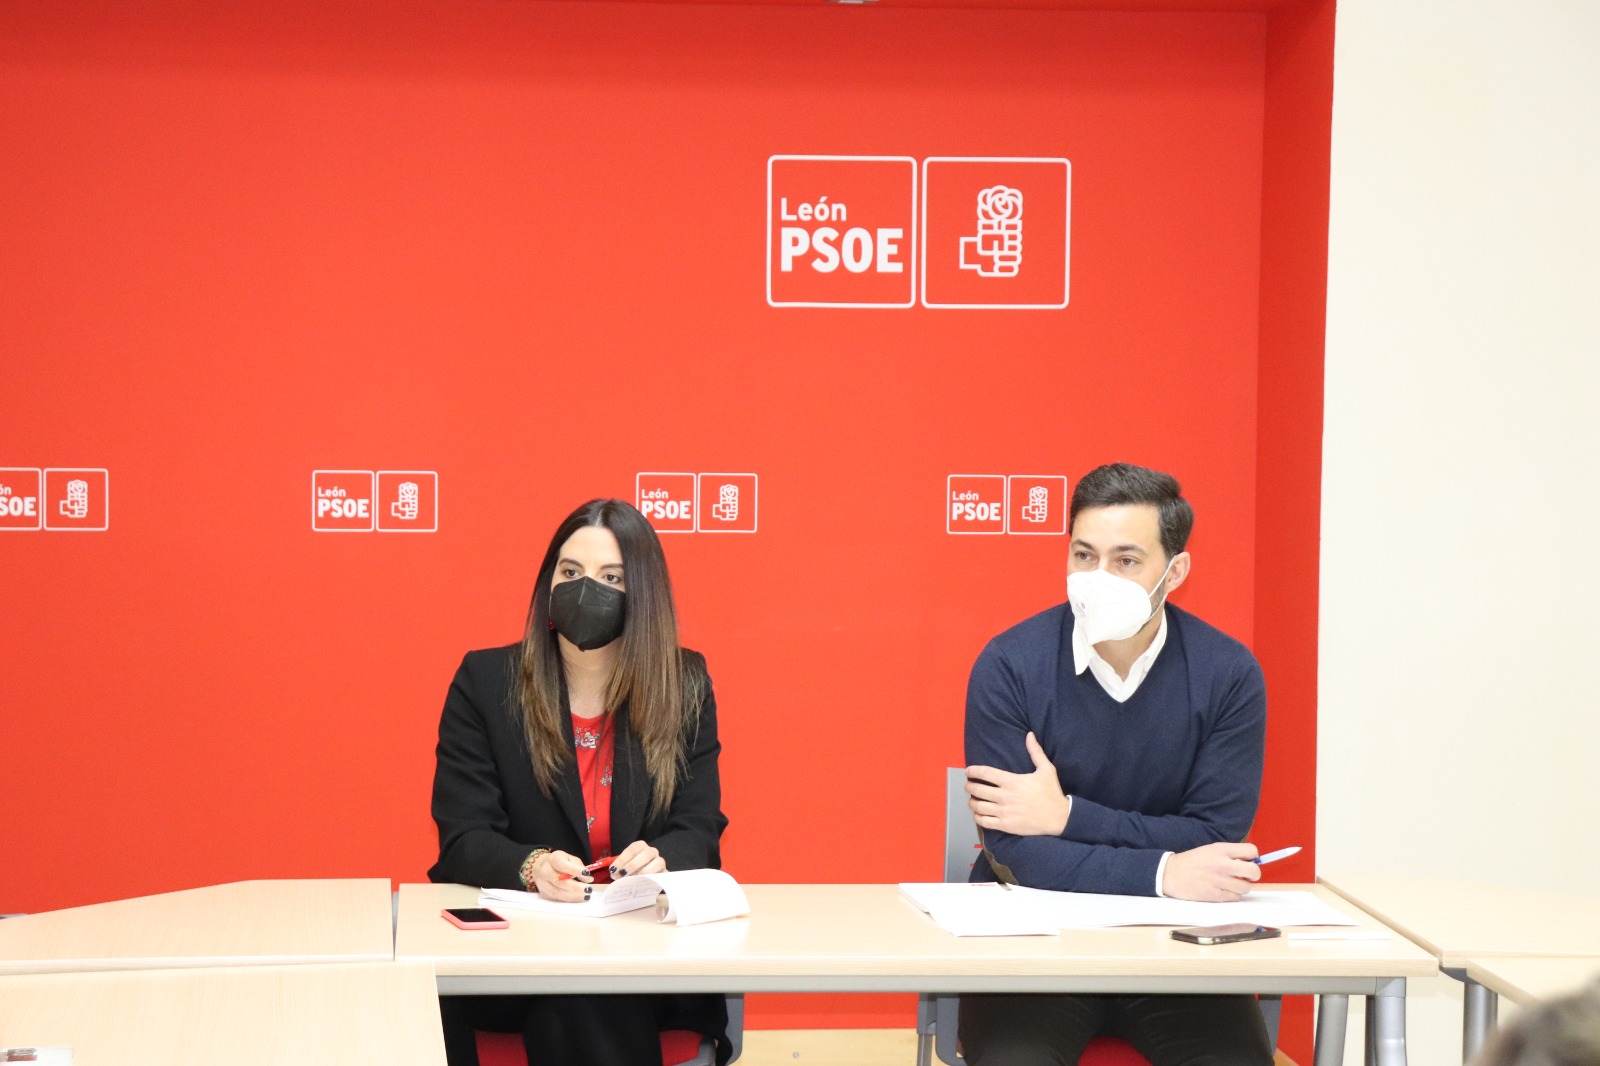 El PSOE de León garantiza una sanidad pública equitativa y consensuada con representantes del territorio y del sector para acabar con los desequilibrios